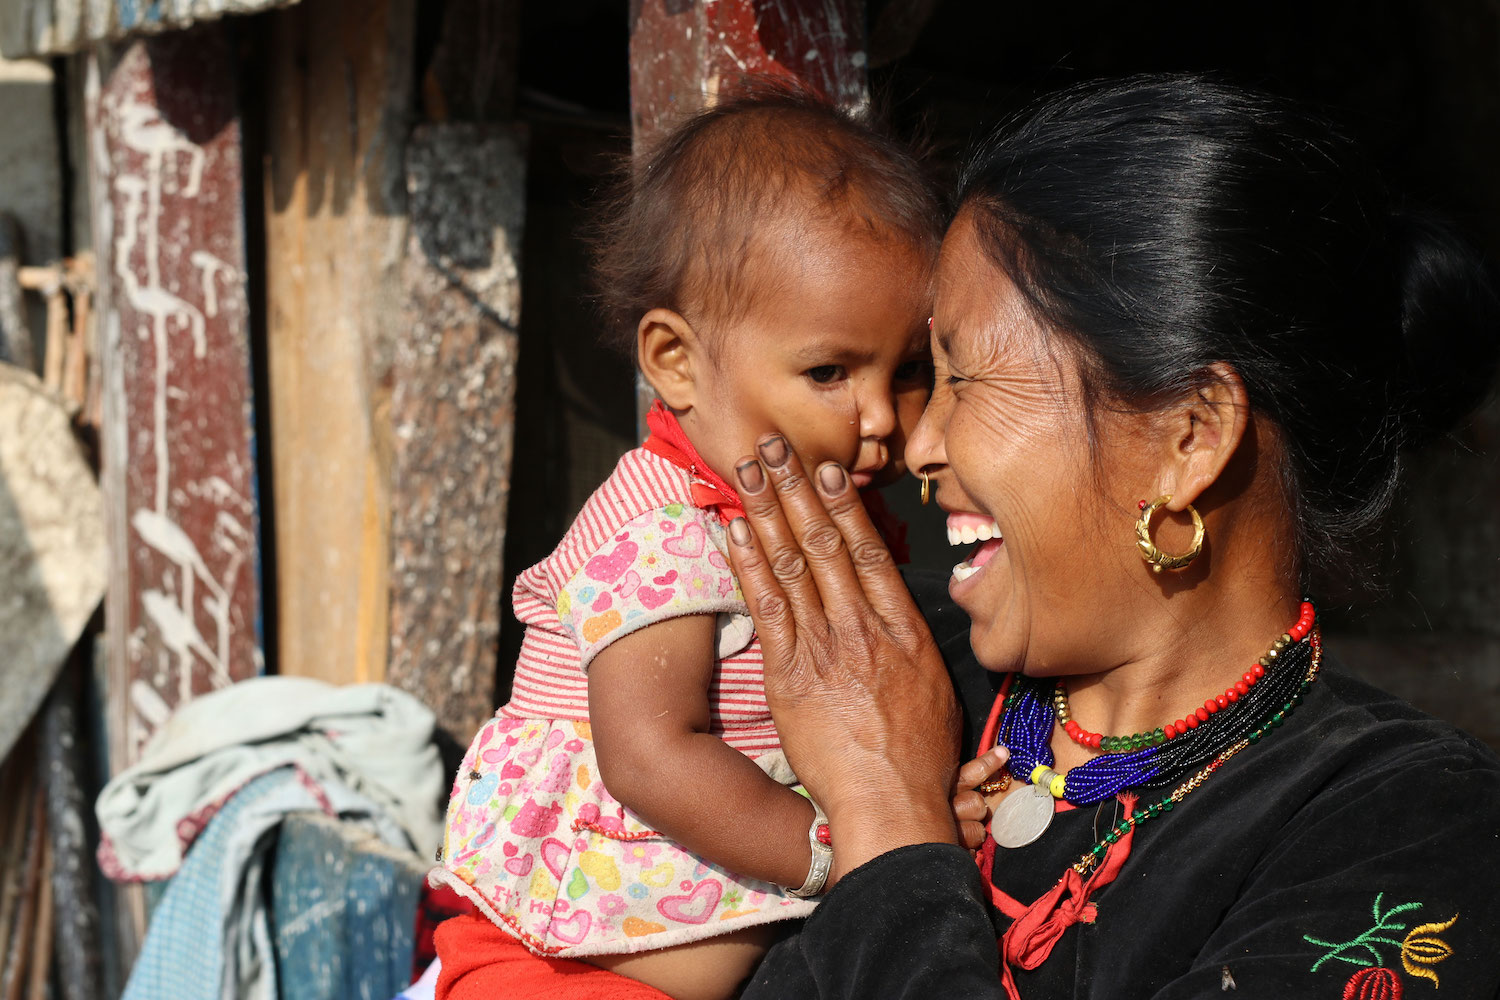 Wir unterstützen SELBSTHILFE UND EMPOWERMENT IN NEPAL